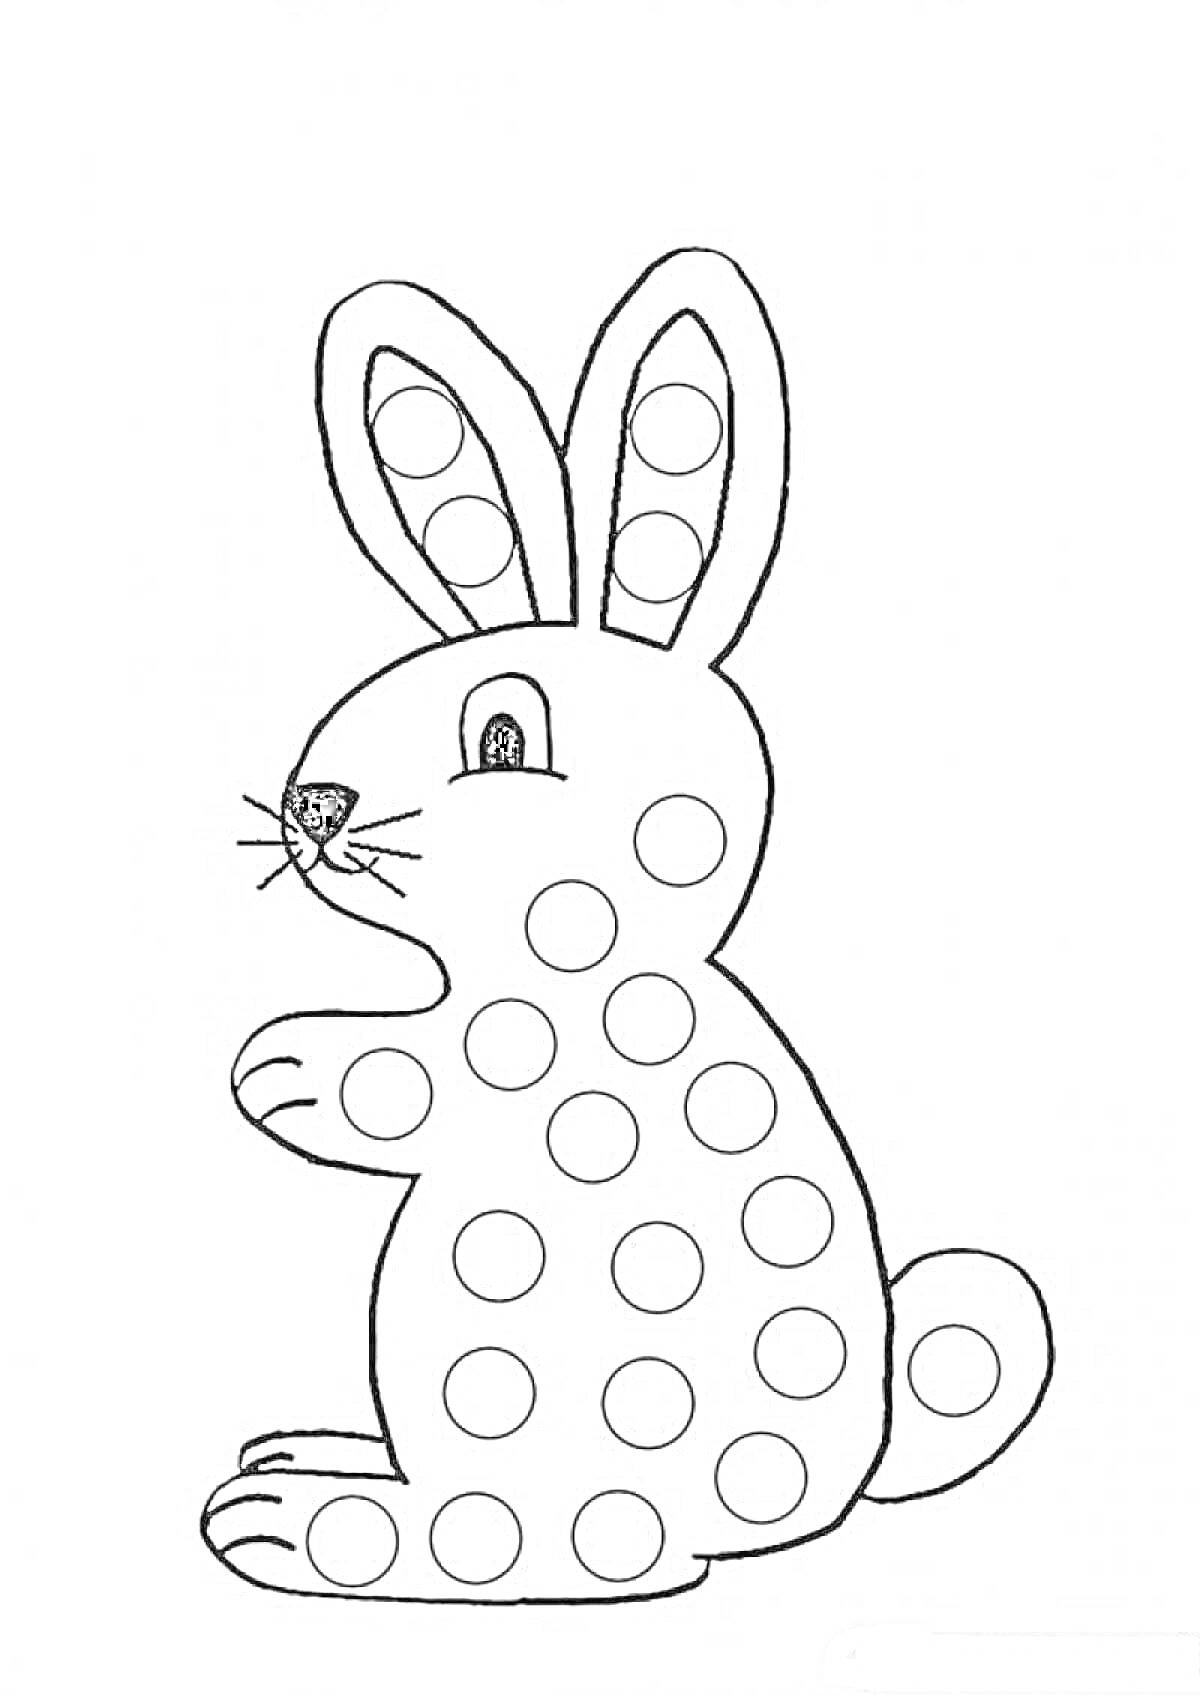 Шаблон для пальчиков - кролик с точками